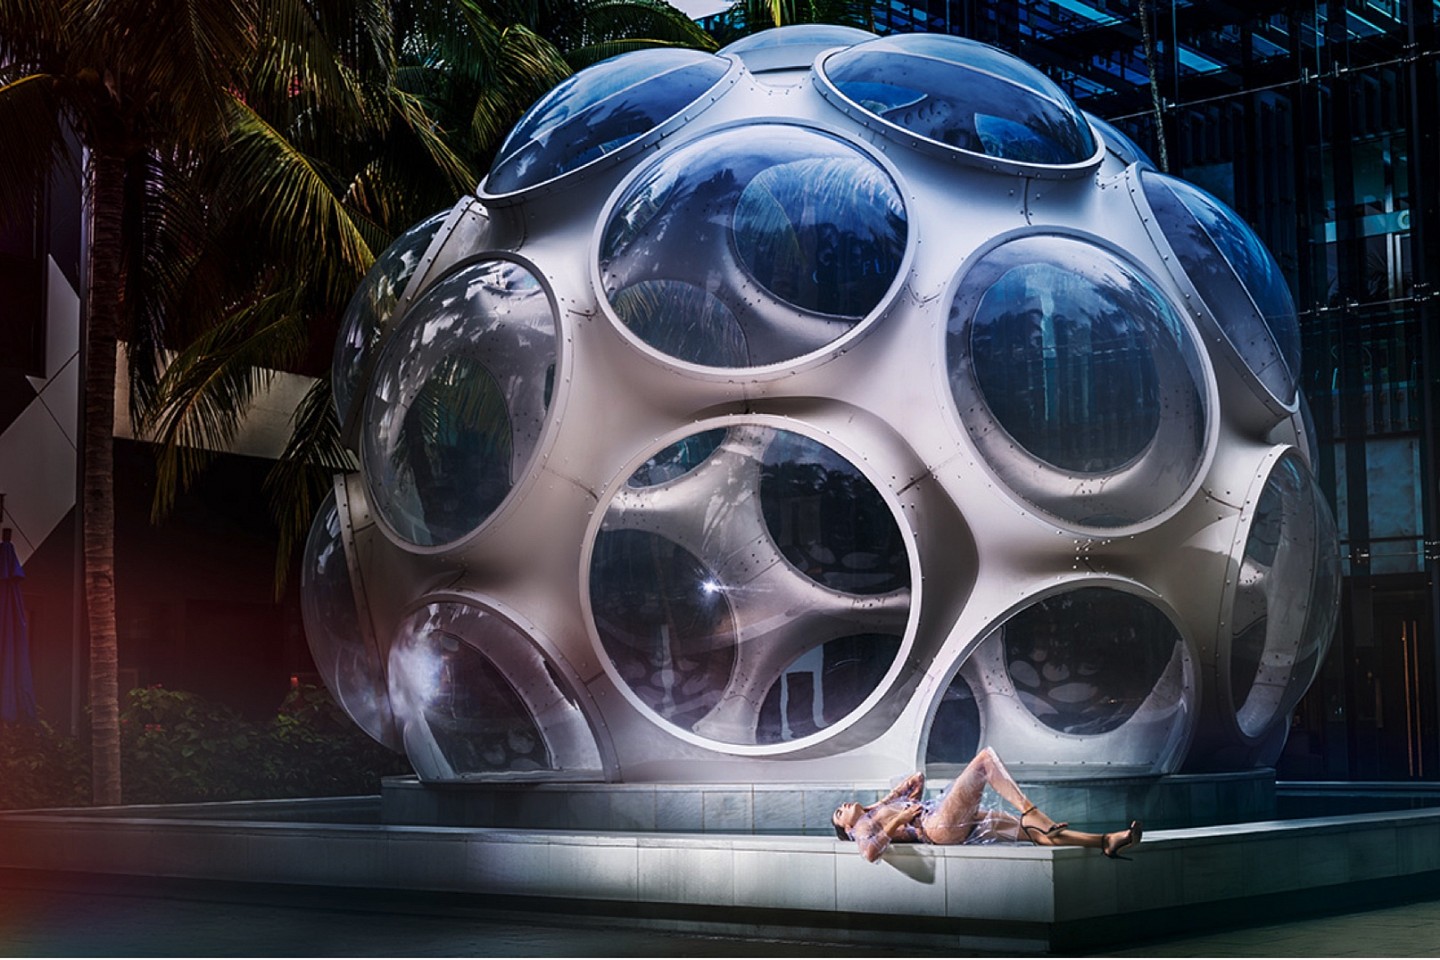 David Drebin, Outside the Bubble , 2019
48 x 72 and 30 x 45 inches